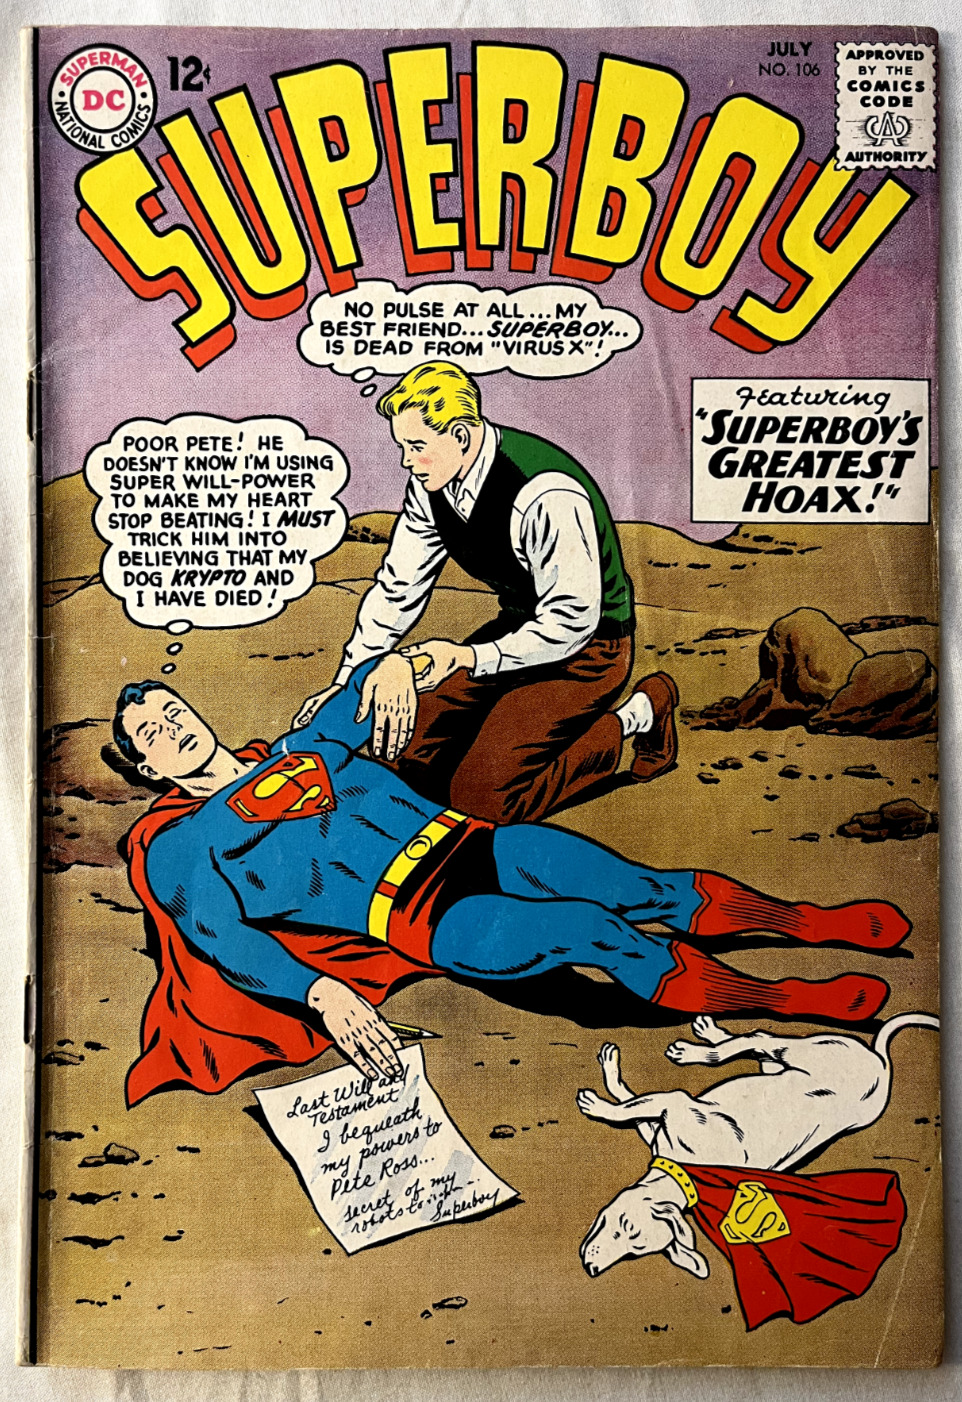 VTG Superboy #106 (1963) VF+ SILVER AGE Superboy's Greatest Hoax